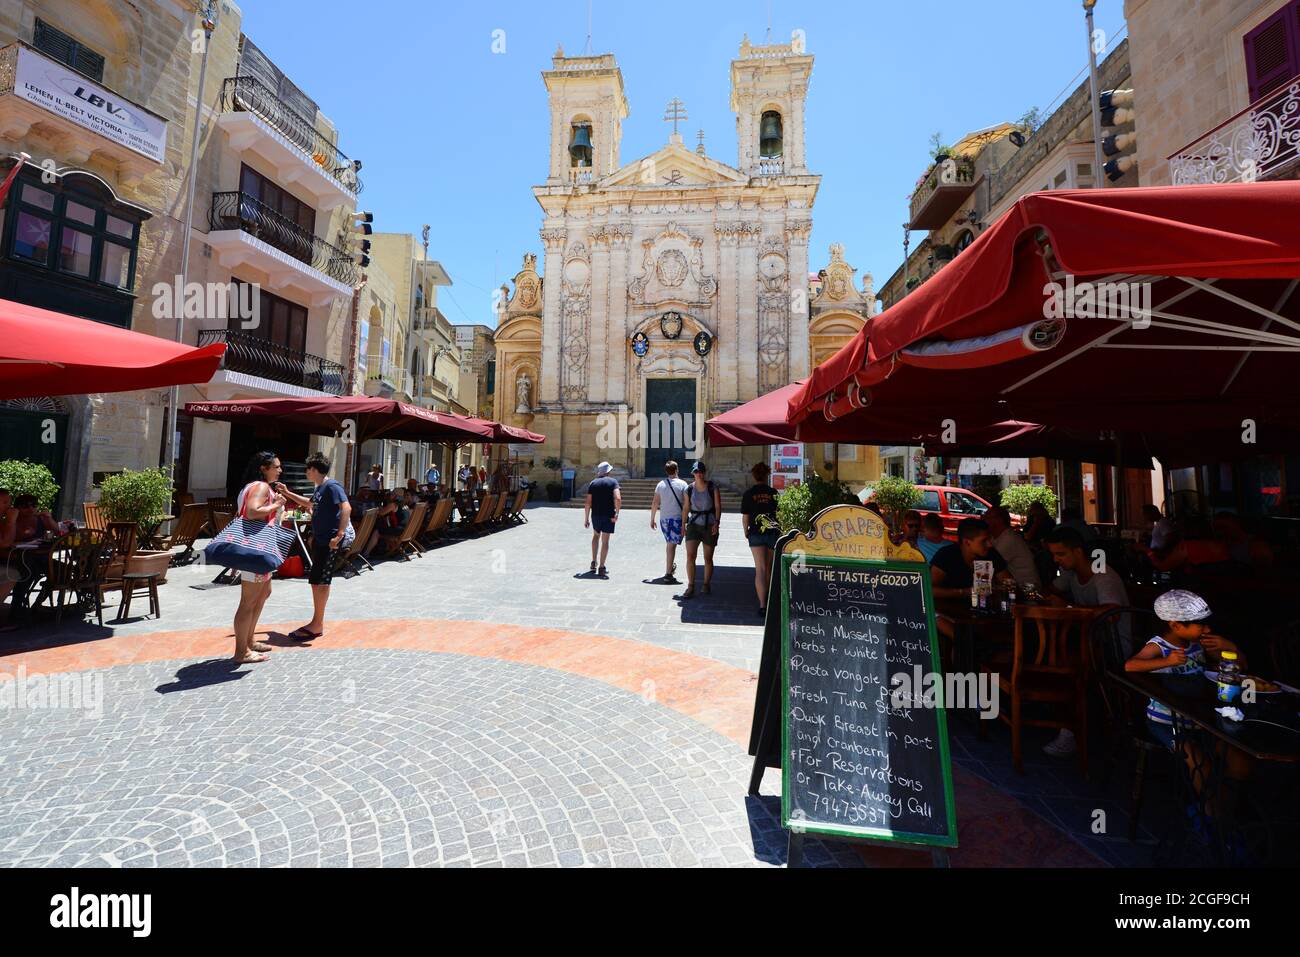 St George's Basilica in VIctoria, Gozo, Malta. Stock Photo